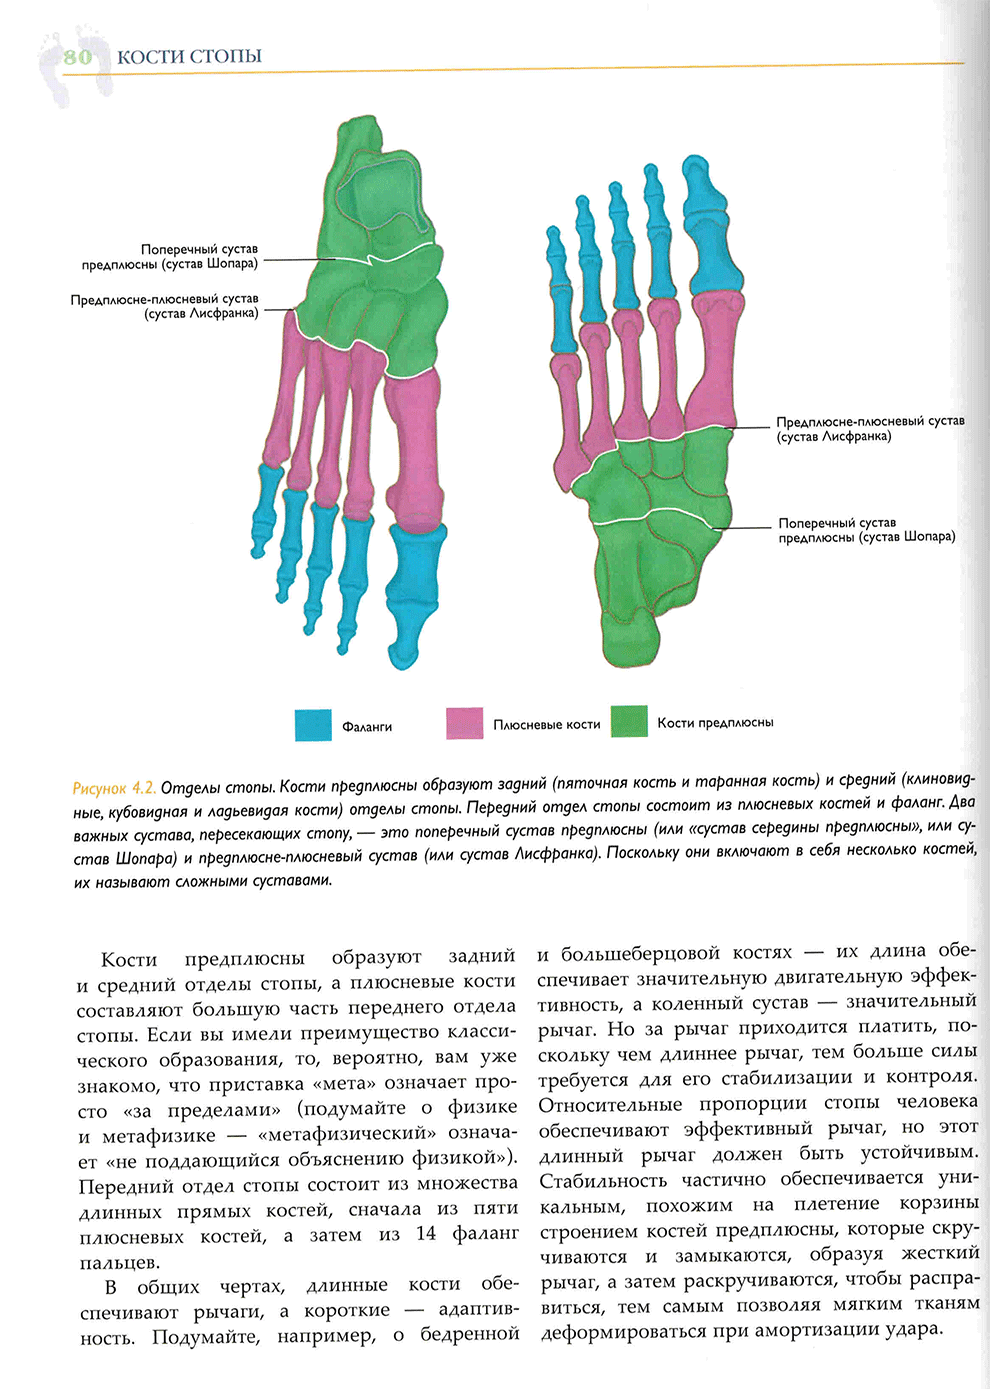 Отделы стопы. Кости предплюсны образуют задний (пяточная кость и таранная кость)